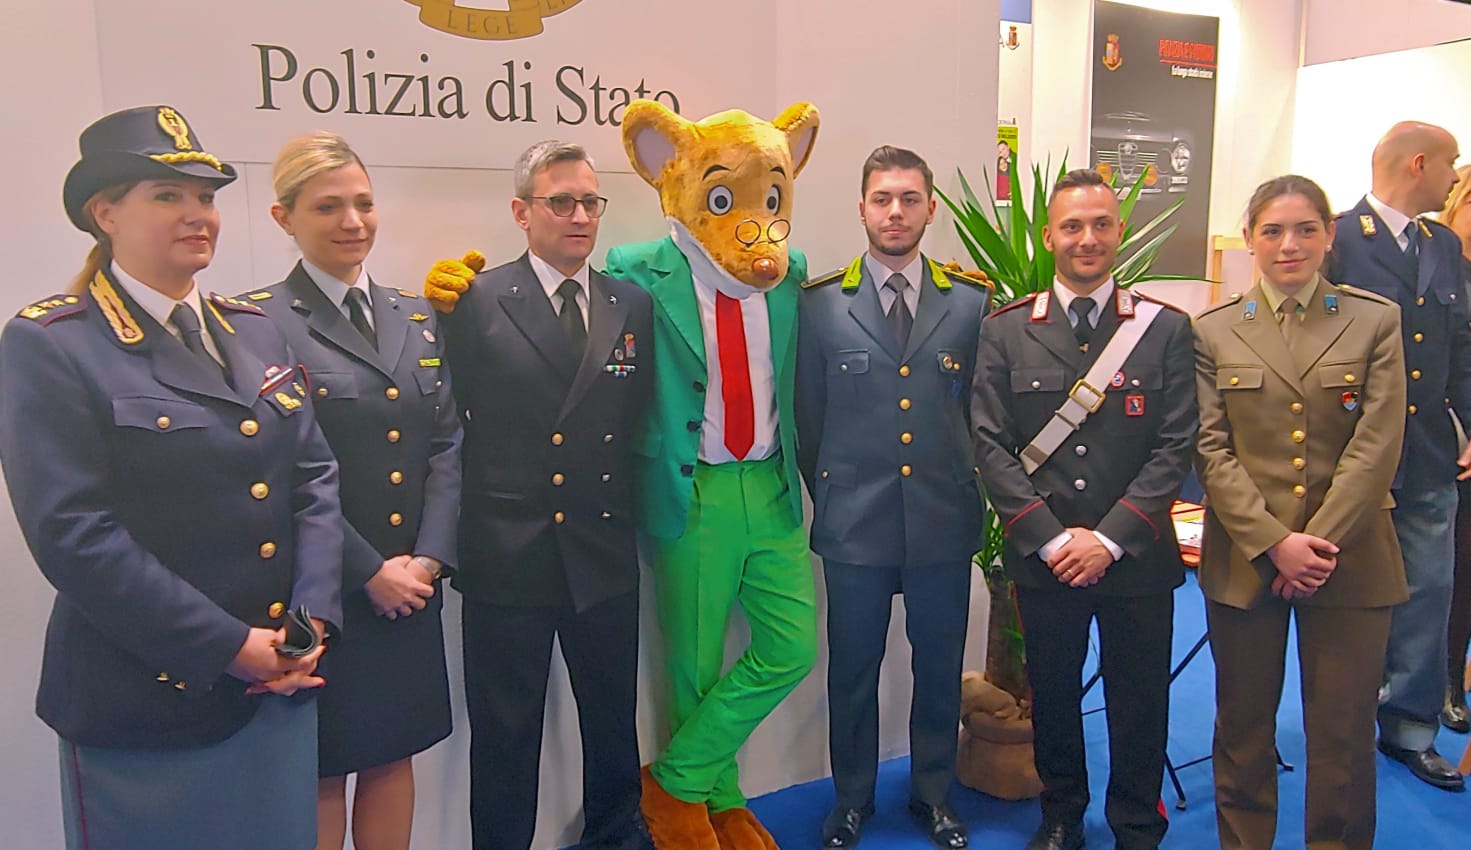 La Polizia di Stato al Salone del libro di Torino